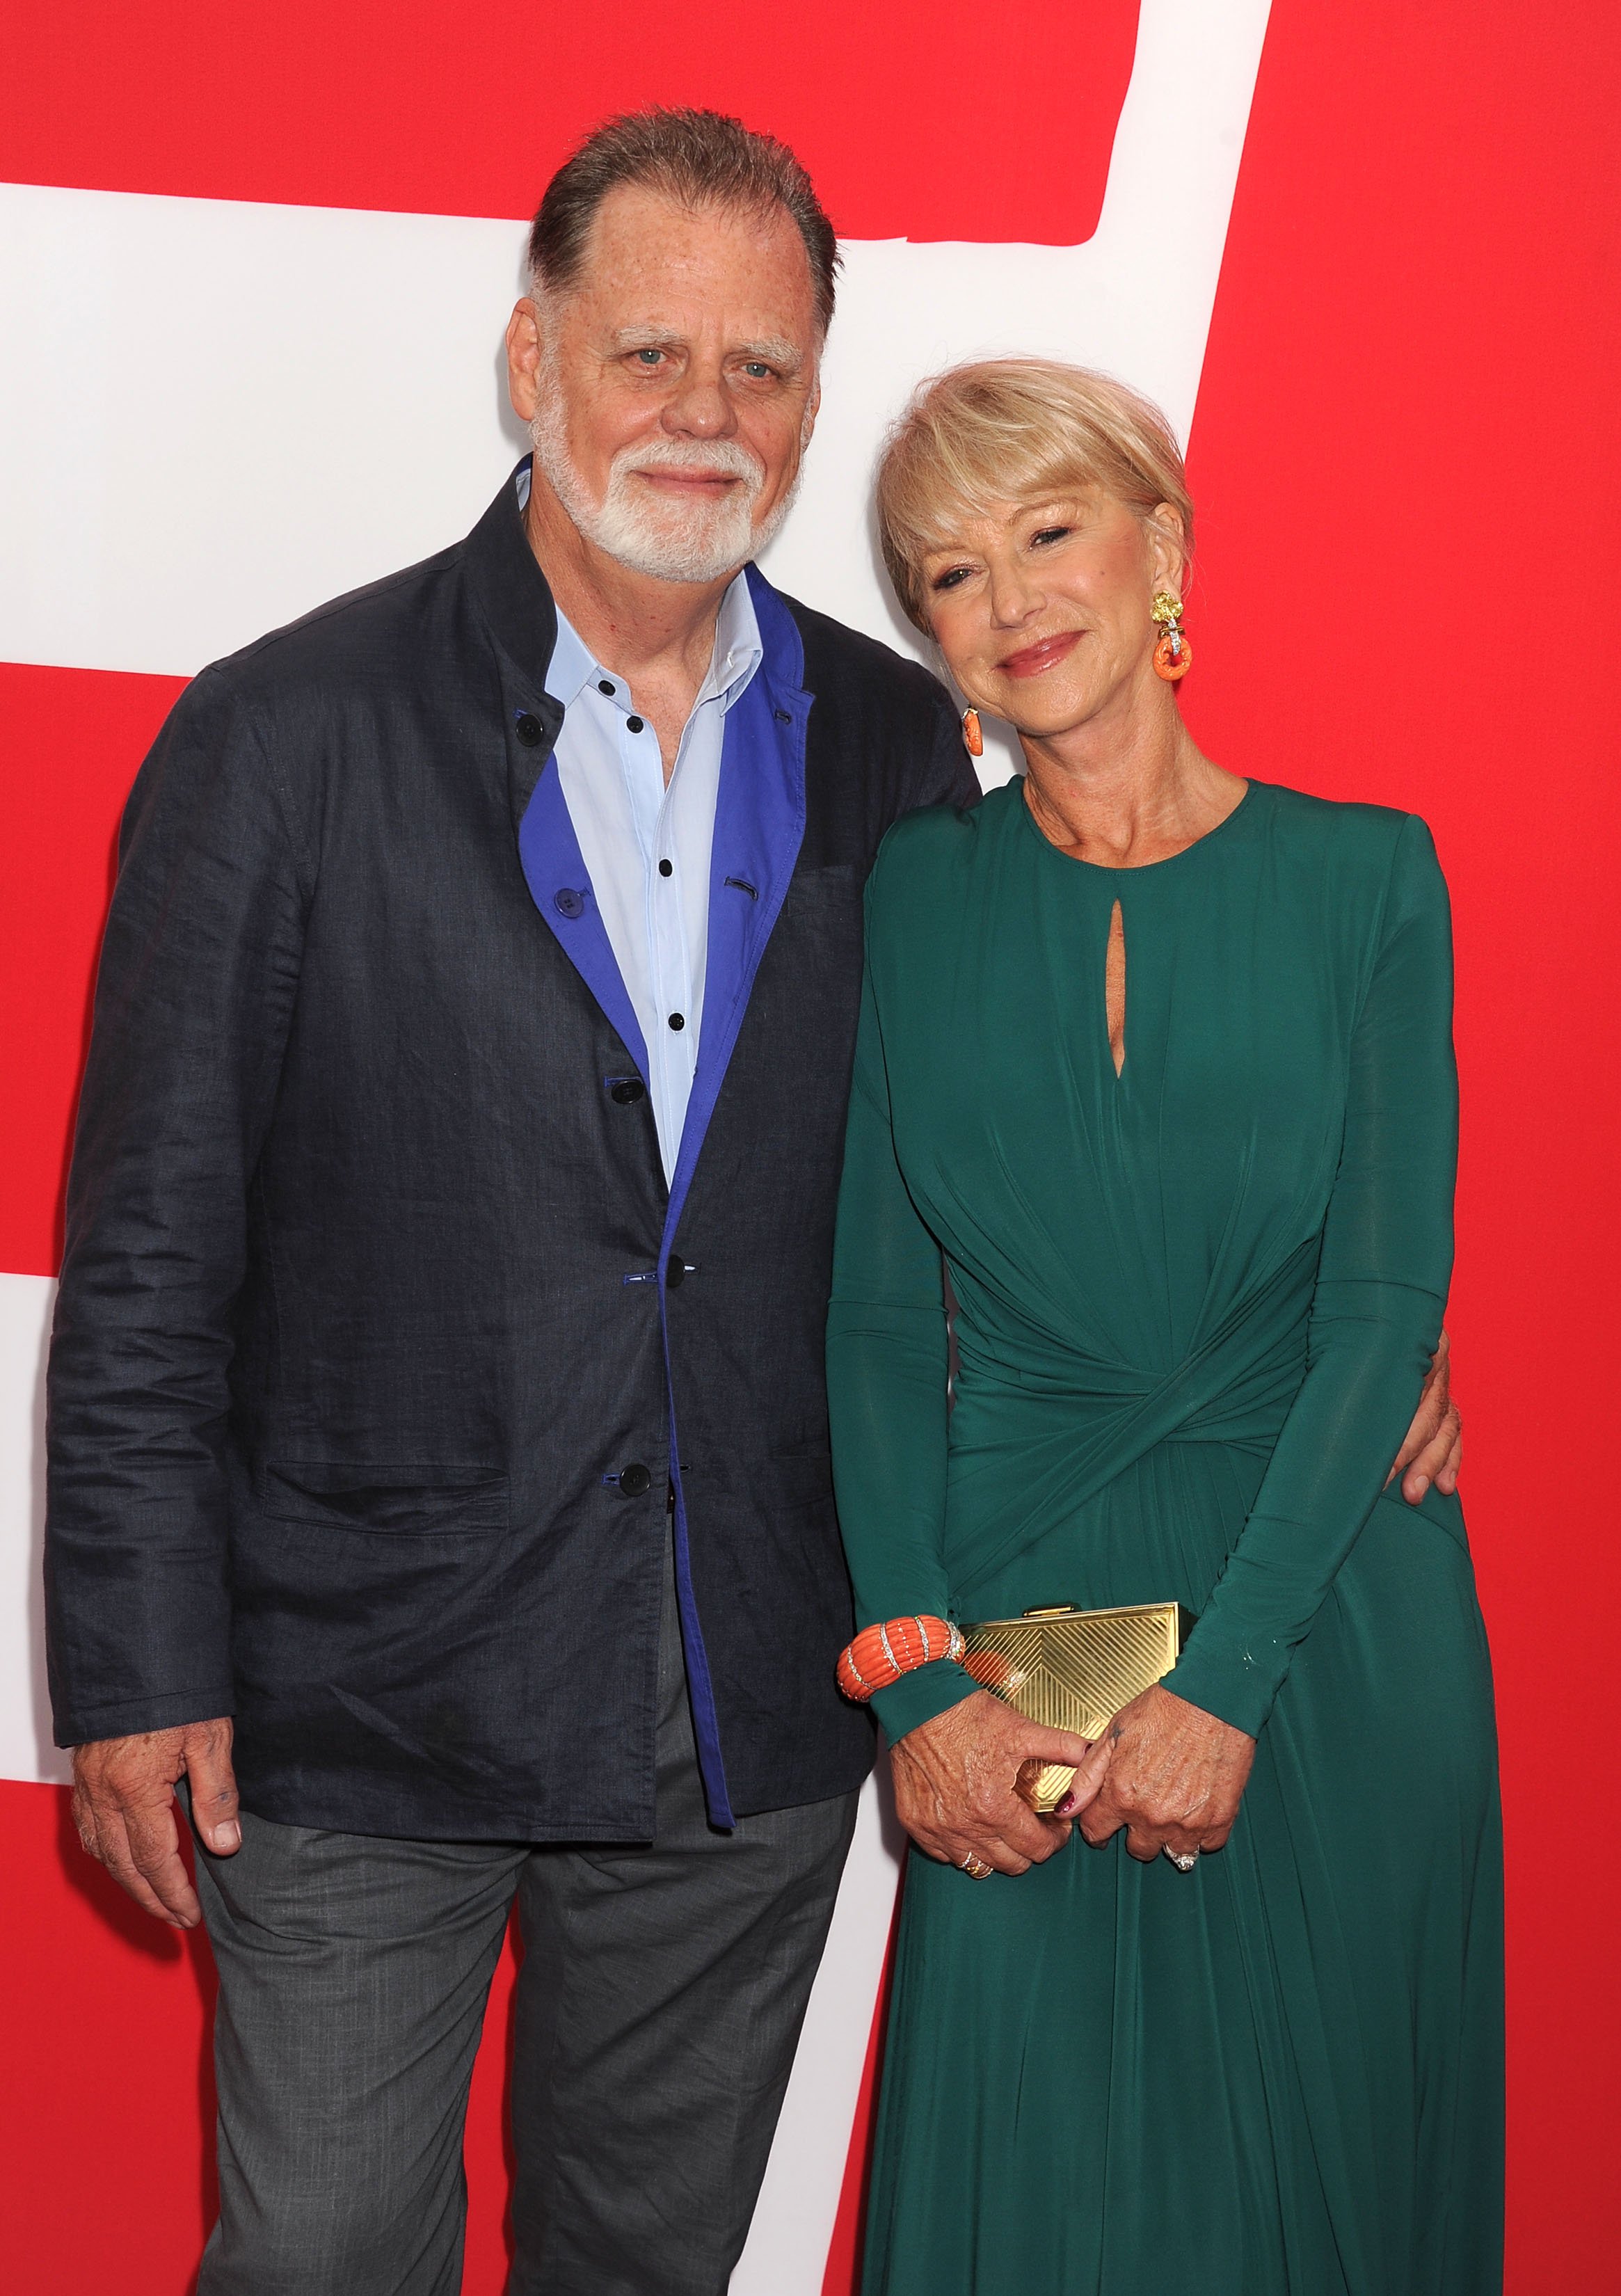 El director Taylor Hackford y su esposa, la actriz Helen Mirren, en el estreno de "Red 2" en Westwood Village, el 11 de julio de 2013 en Los Ángeles. | Foto: Getty Images